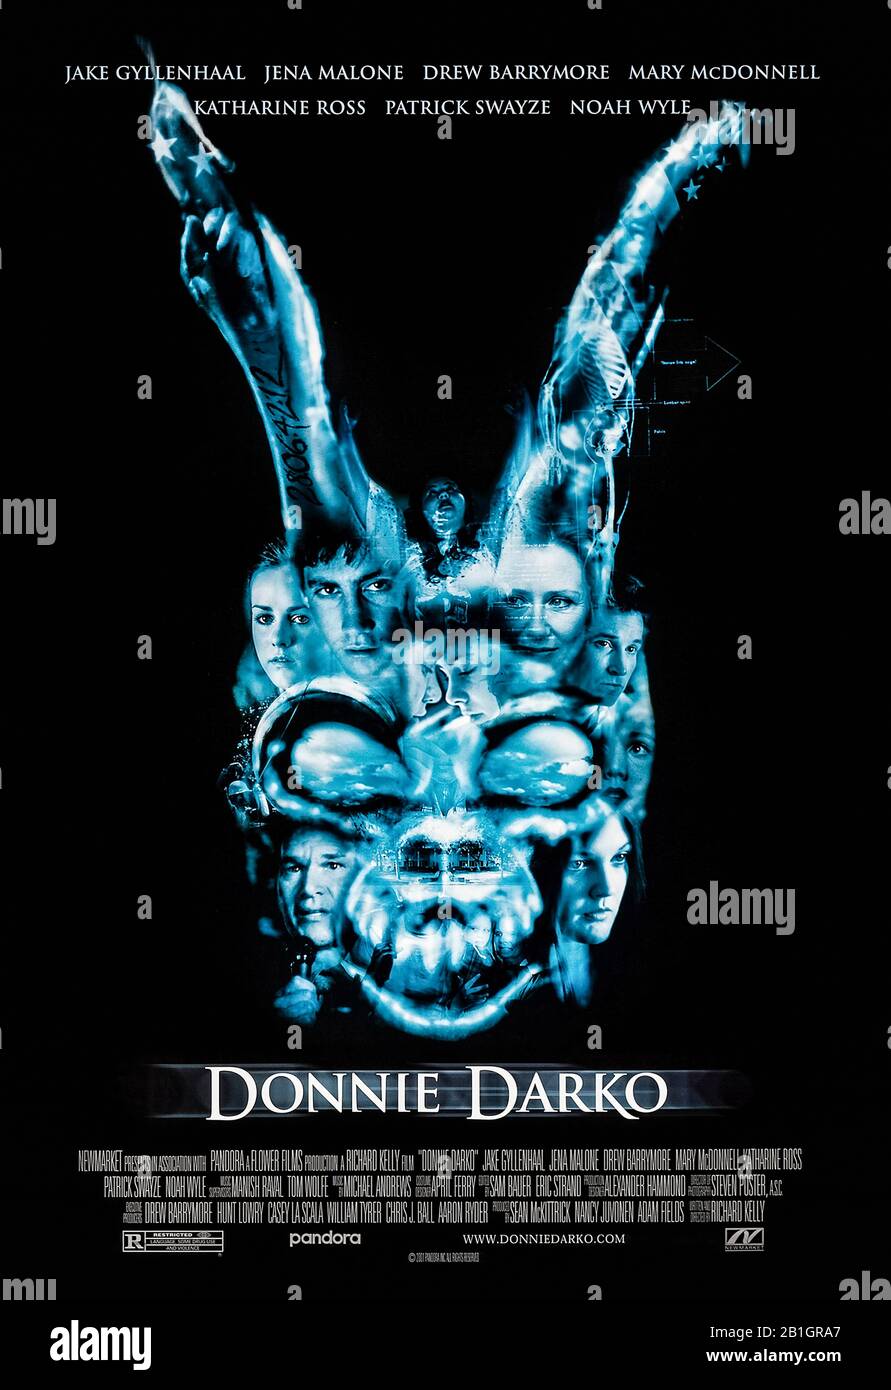 Donnie Darko (2001) dirigée par Richard Kelly et mettant en vedette Jake Gyllenhaal, Jena Malone, Mary McDonnell et Patrick Swayze. Un adolescent a une chance d'échapper et commence à avoir des visions d'un homme vêtu d'un costume de lapin troublant. Banque D'Images